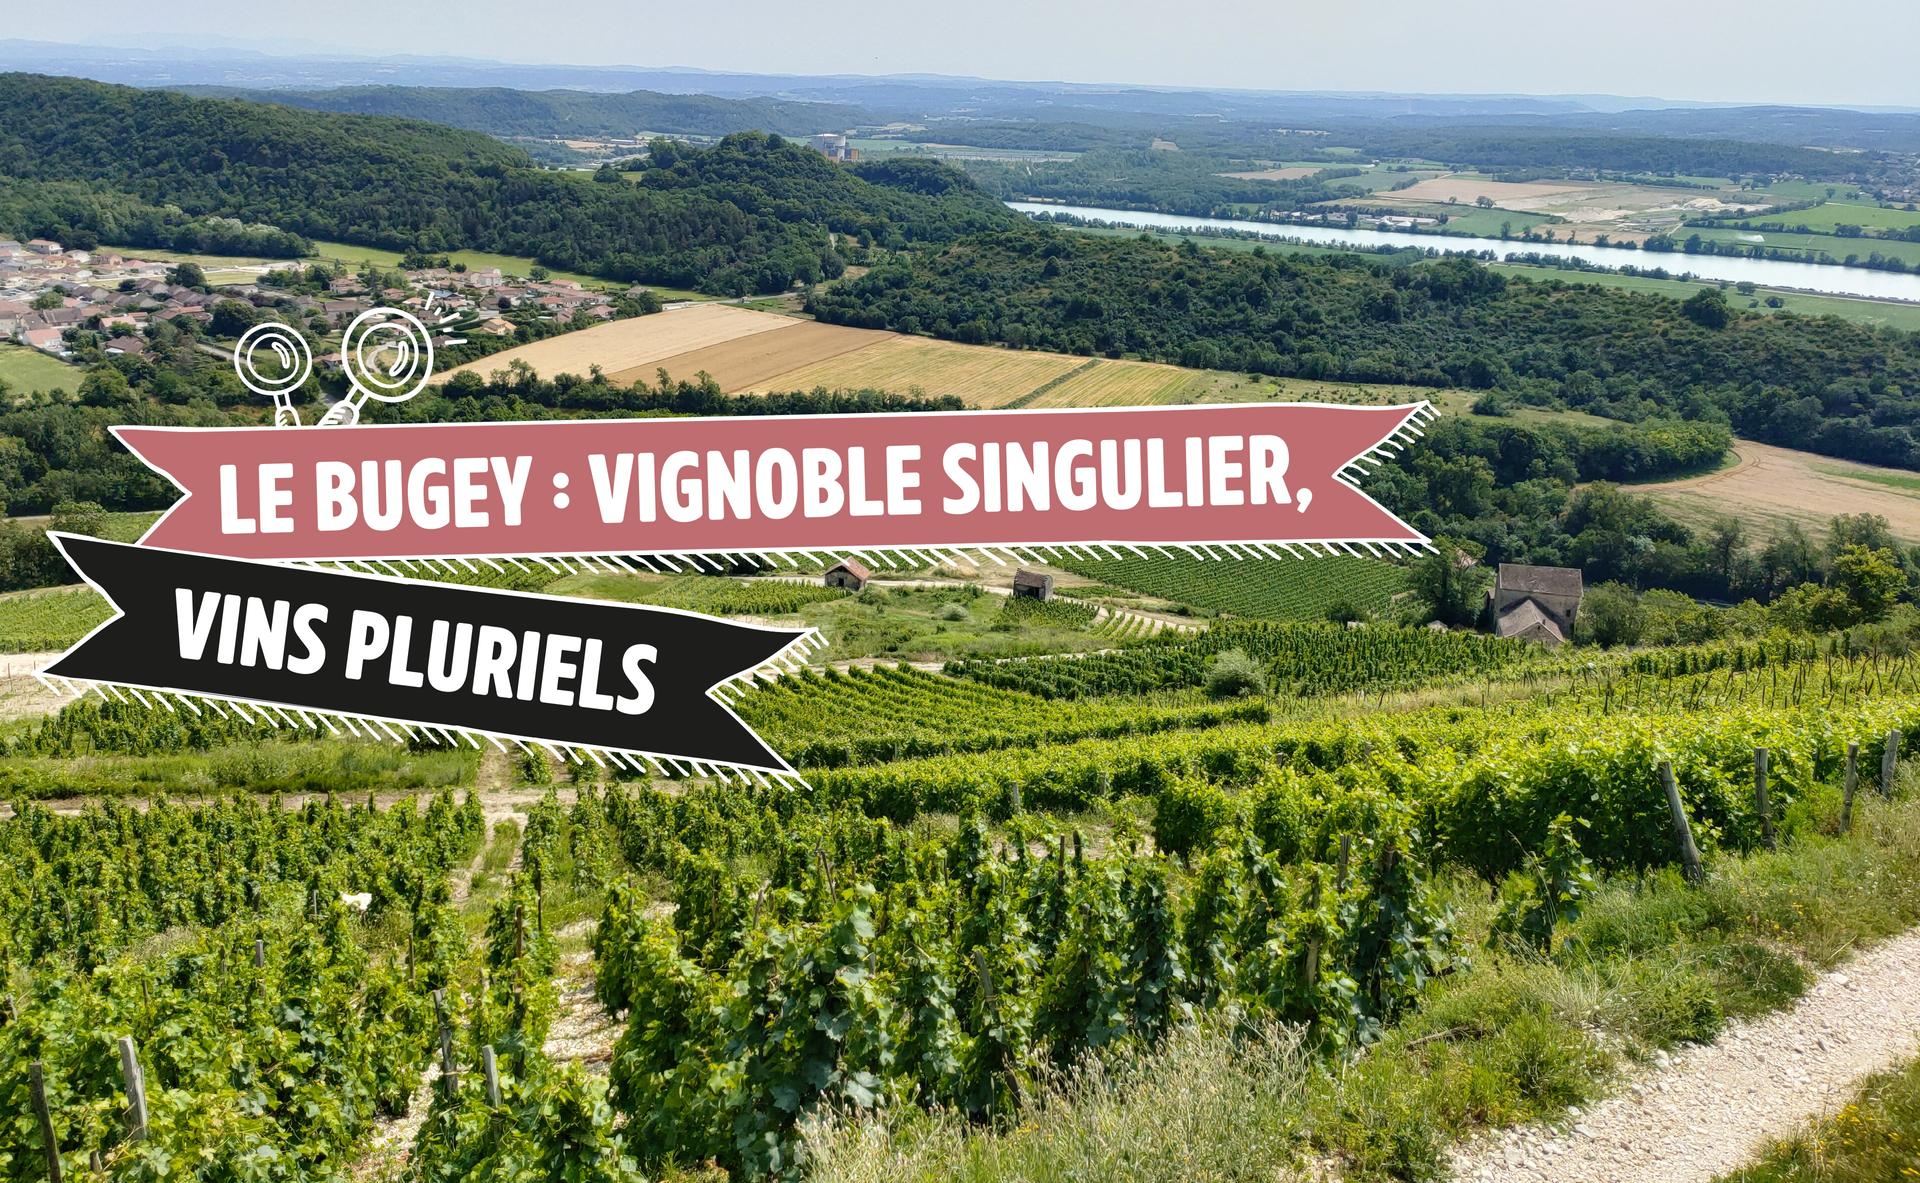 Le Bugey : vignoble singulier, vins pluriels